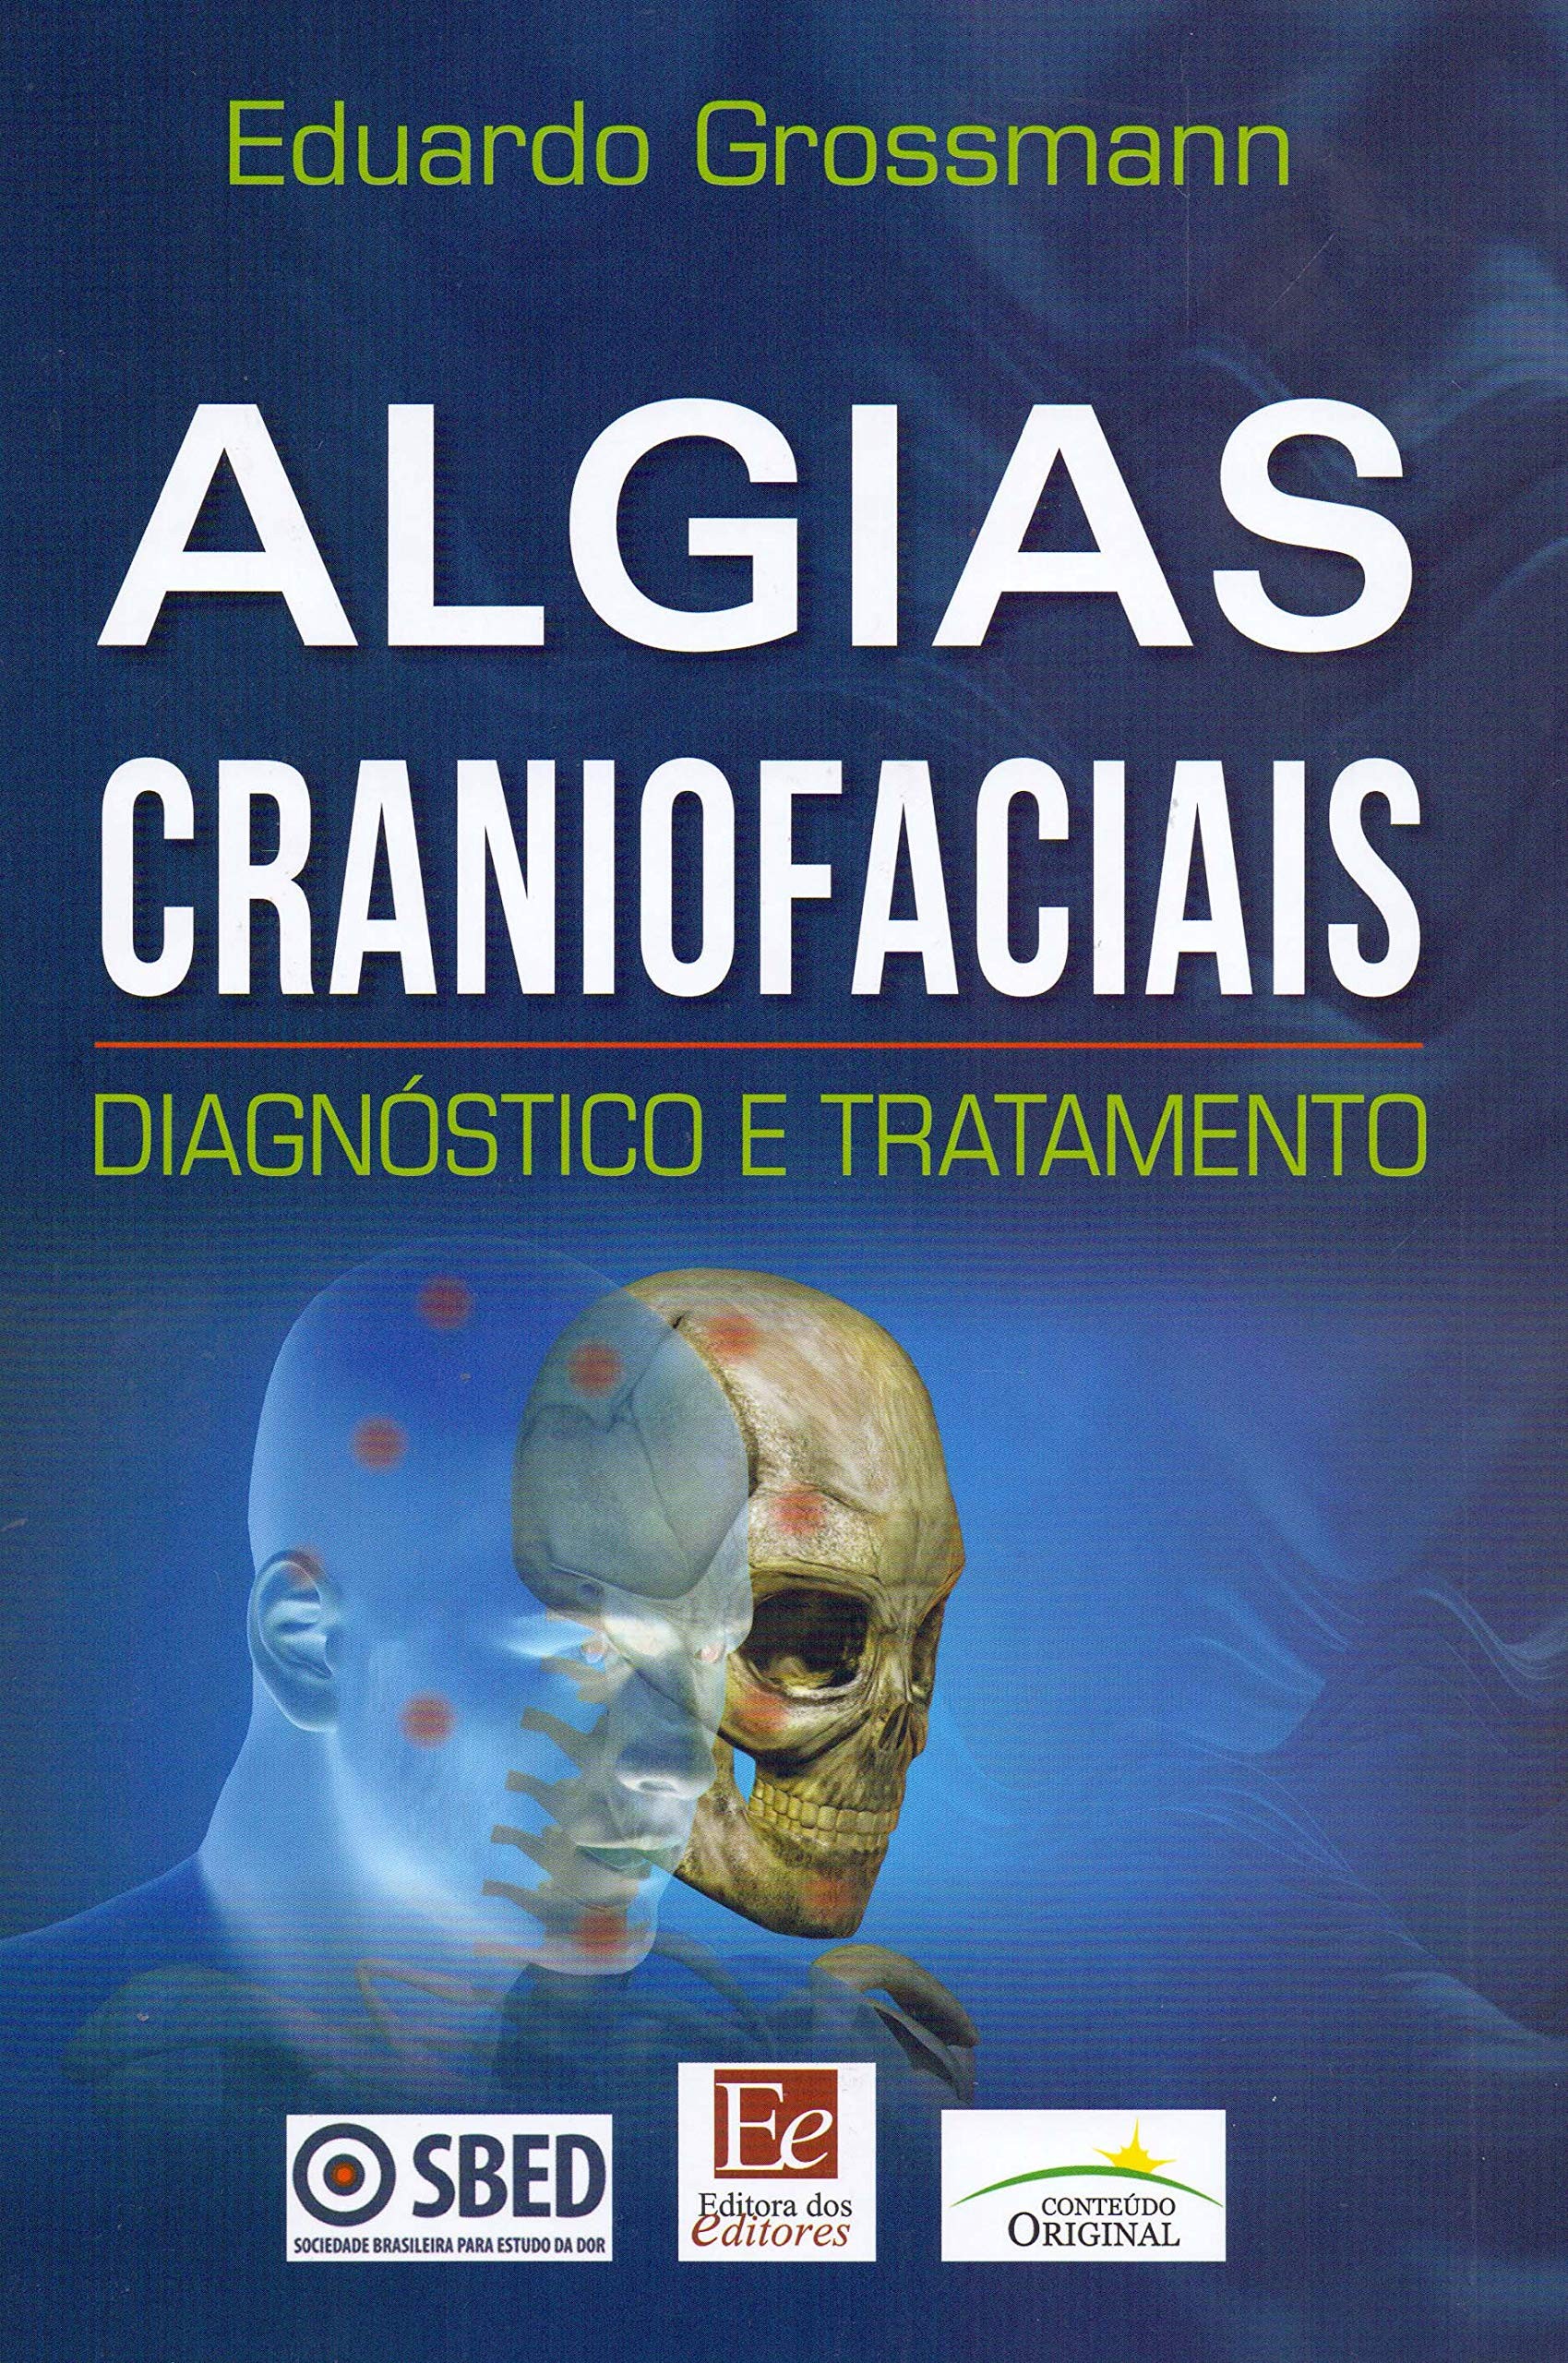 Algias Craniofaciais Diagnostico E Tratamento